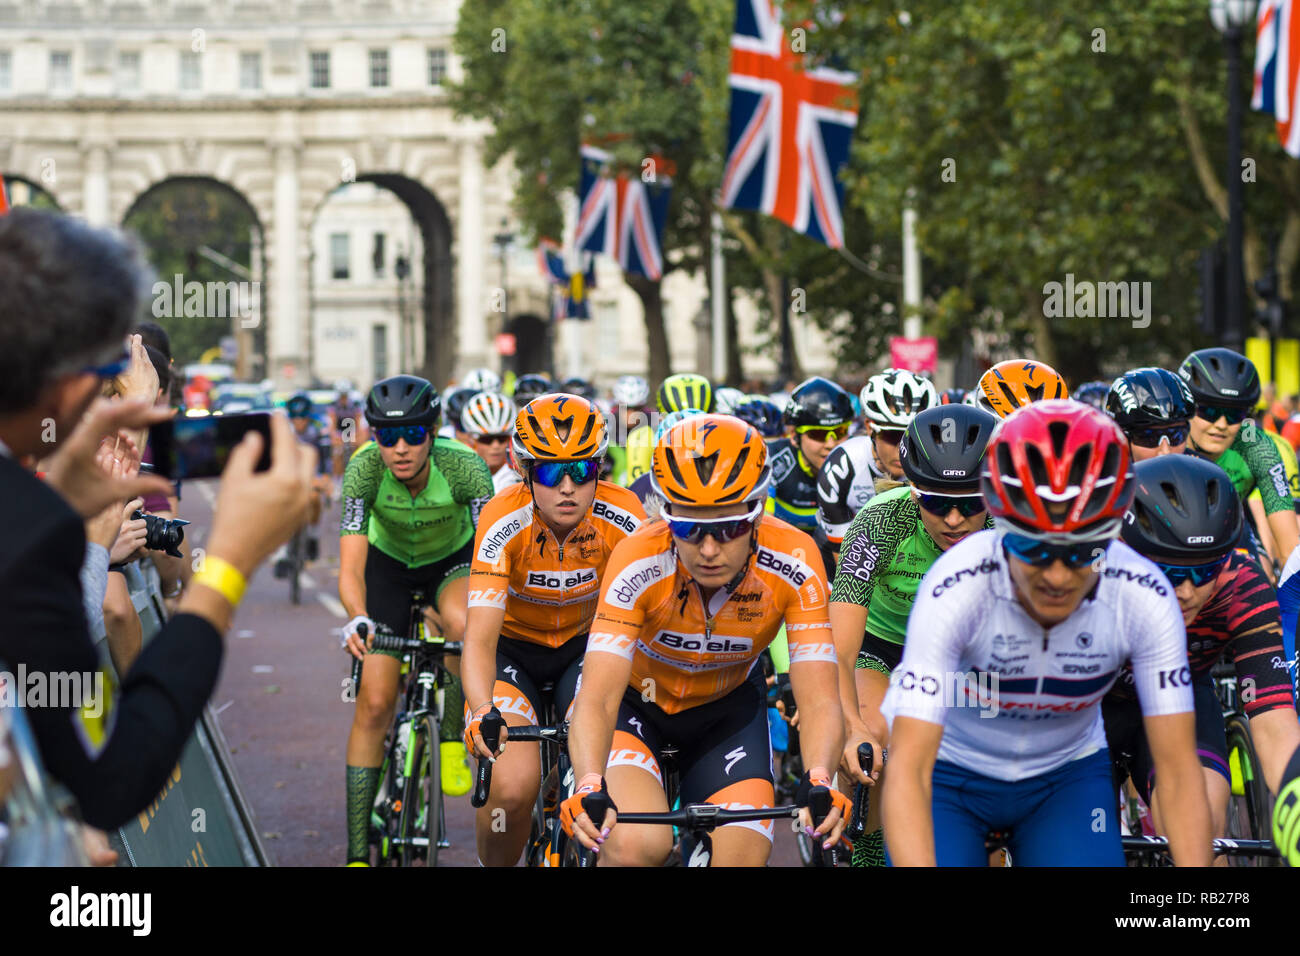 Les cyclistes dans le Prudential RideLondon 2018 vélo de course vers le bas le centre commercial avant le départ de la course, London, UK Banque D'Images